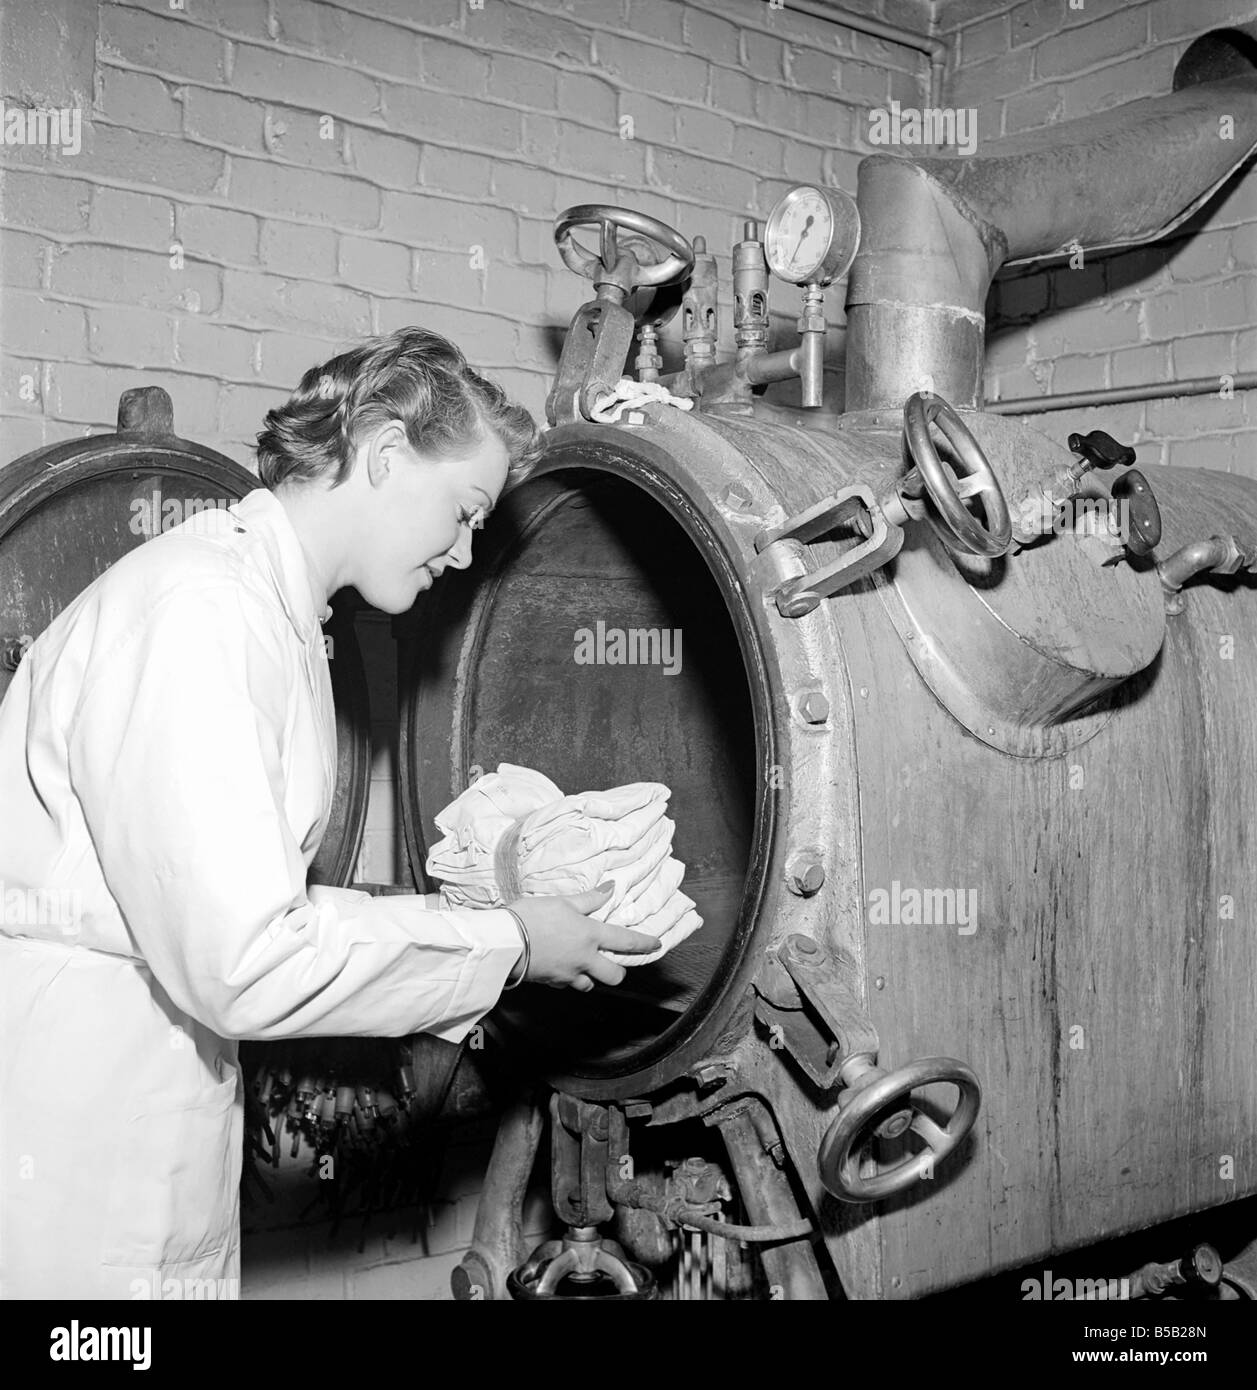 Medical Store: un medico ospedaliero nei negozi dove tute, camici, maschere e attrezzature utilizzati in sala operatoria vengono sterilizzati prima di essere ri-alimentato al teatro. 1954 Foto Stock